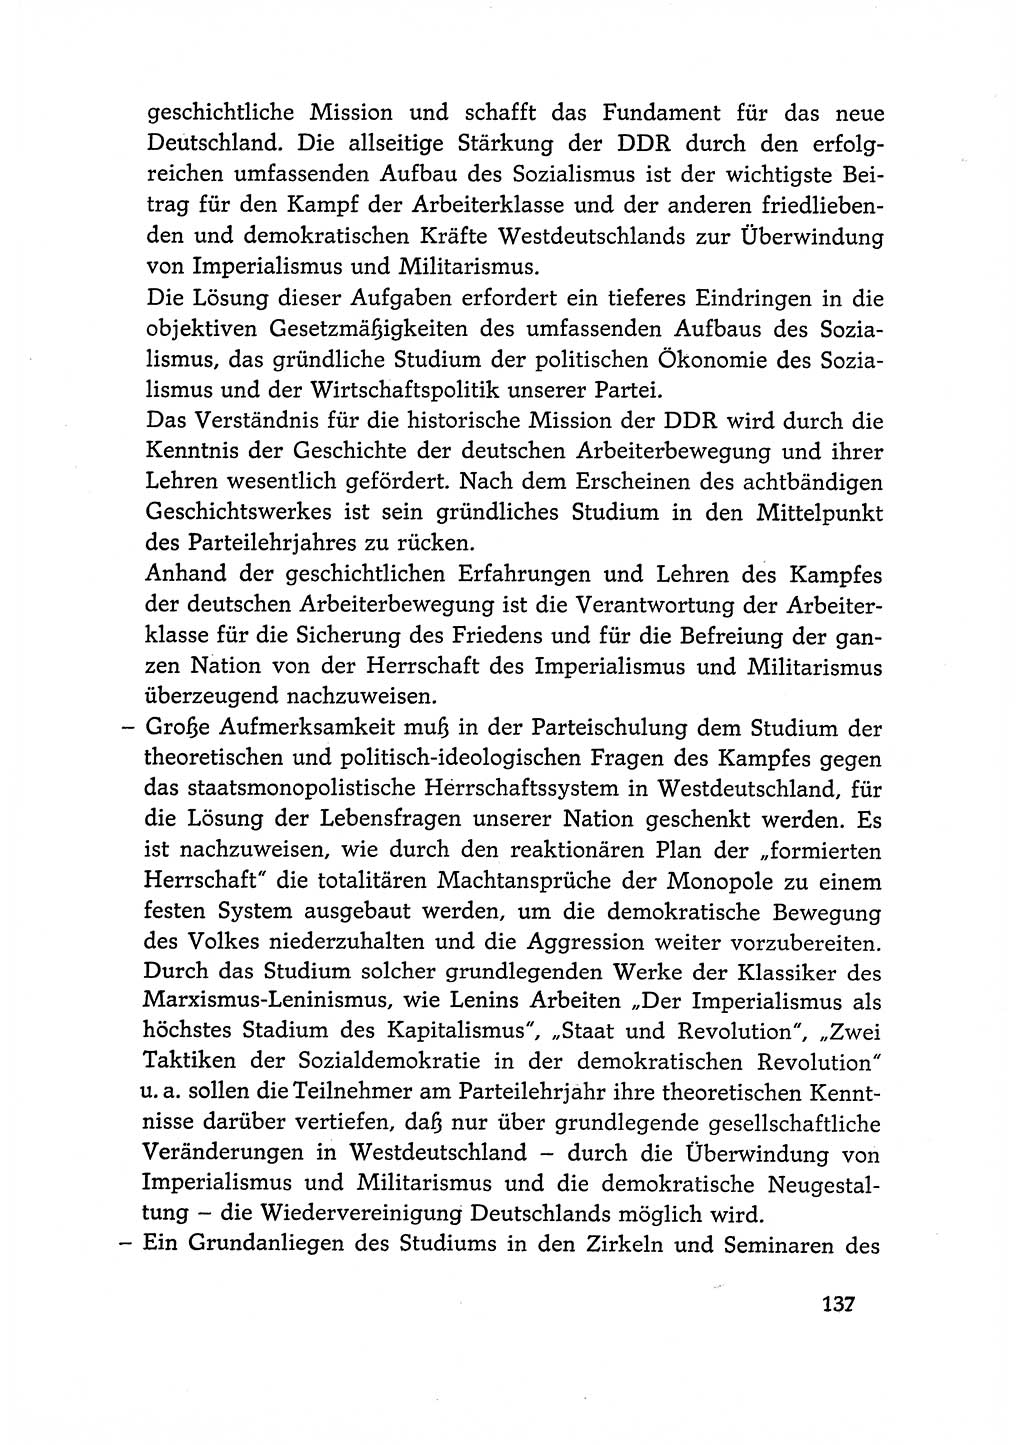 Dokumente der Sozialistischen Einheitspartei Deutschlands (SED) [Deutsche Demokratische Republik (DDR)] 1966-1967, Seite 137 (Dok. SED DDR 1966-1967, S. 137)